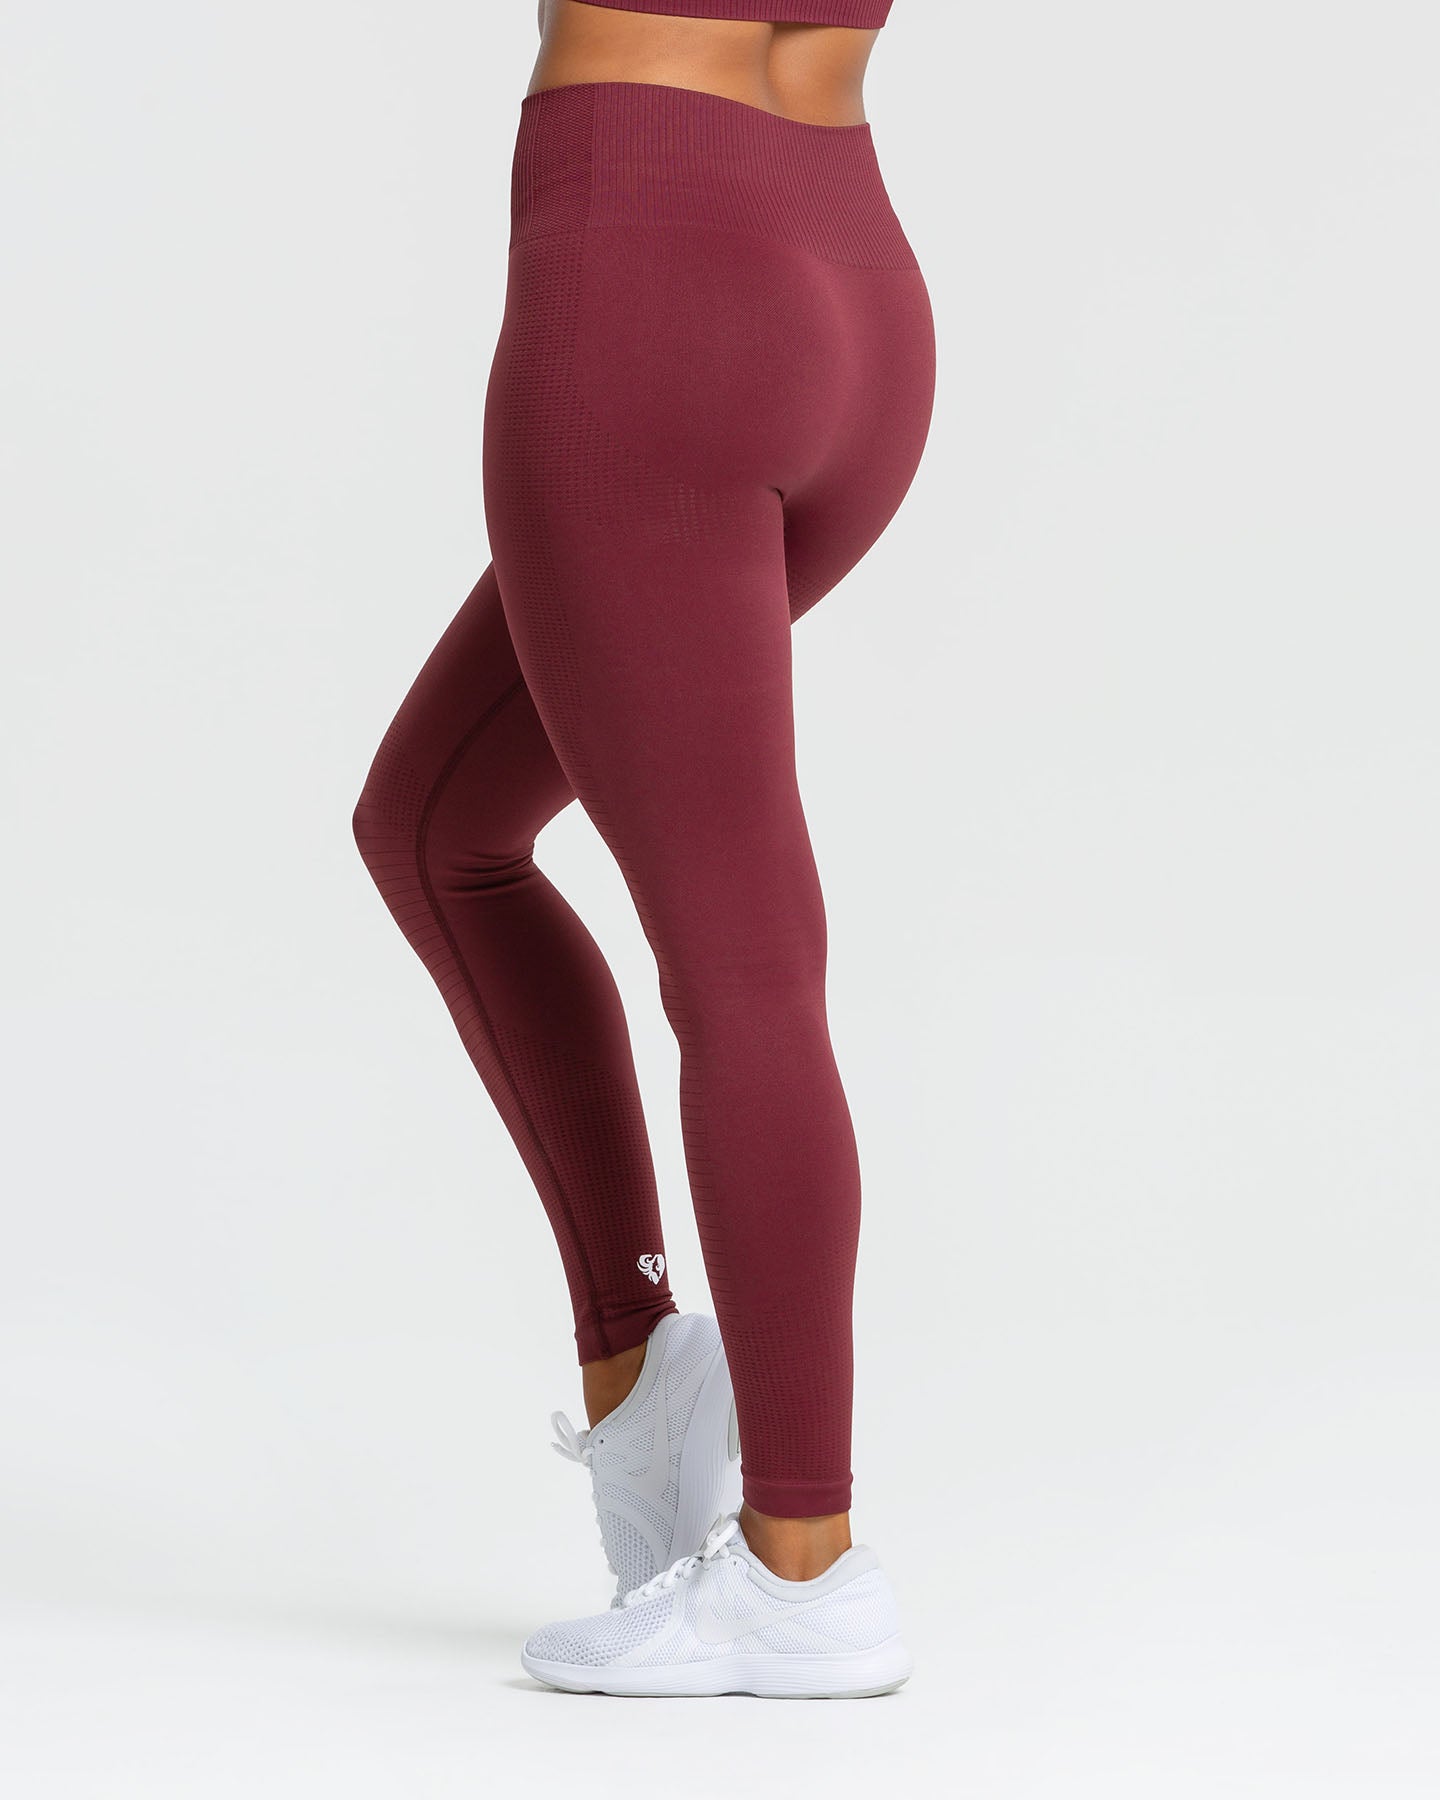 Leggings Femme Jodimitty Pantalons De Yoga Sans Couture Femmes Fitness Push  Up Taille Haute Entraînement Sport Scrunch Collants Imitation Jean Du 10,41  €